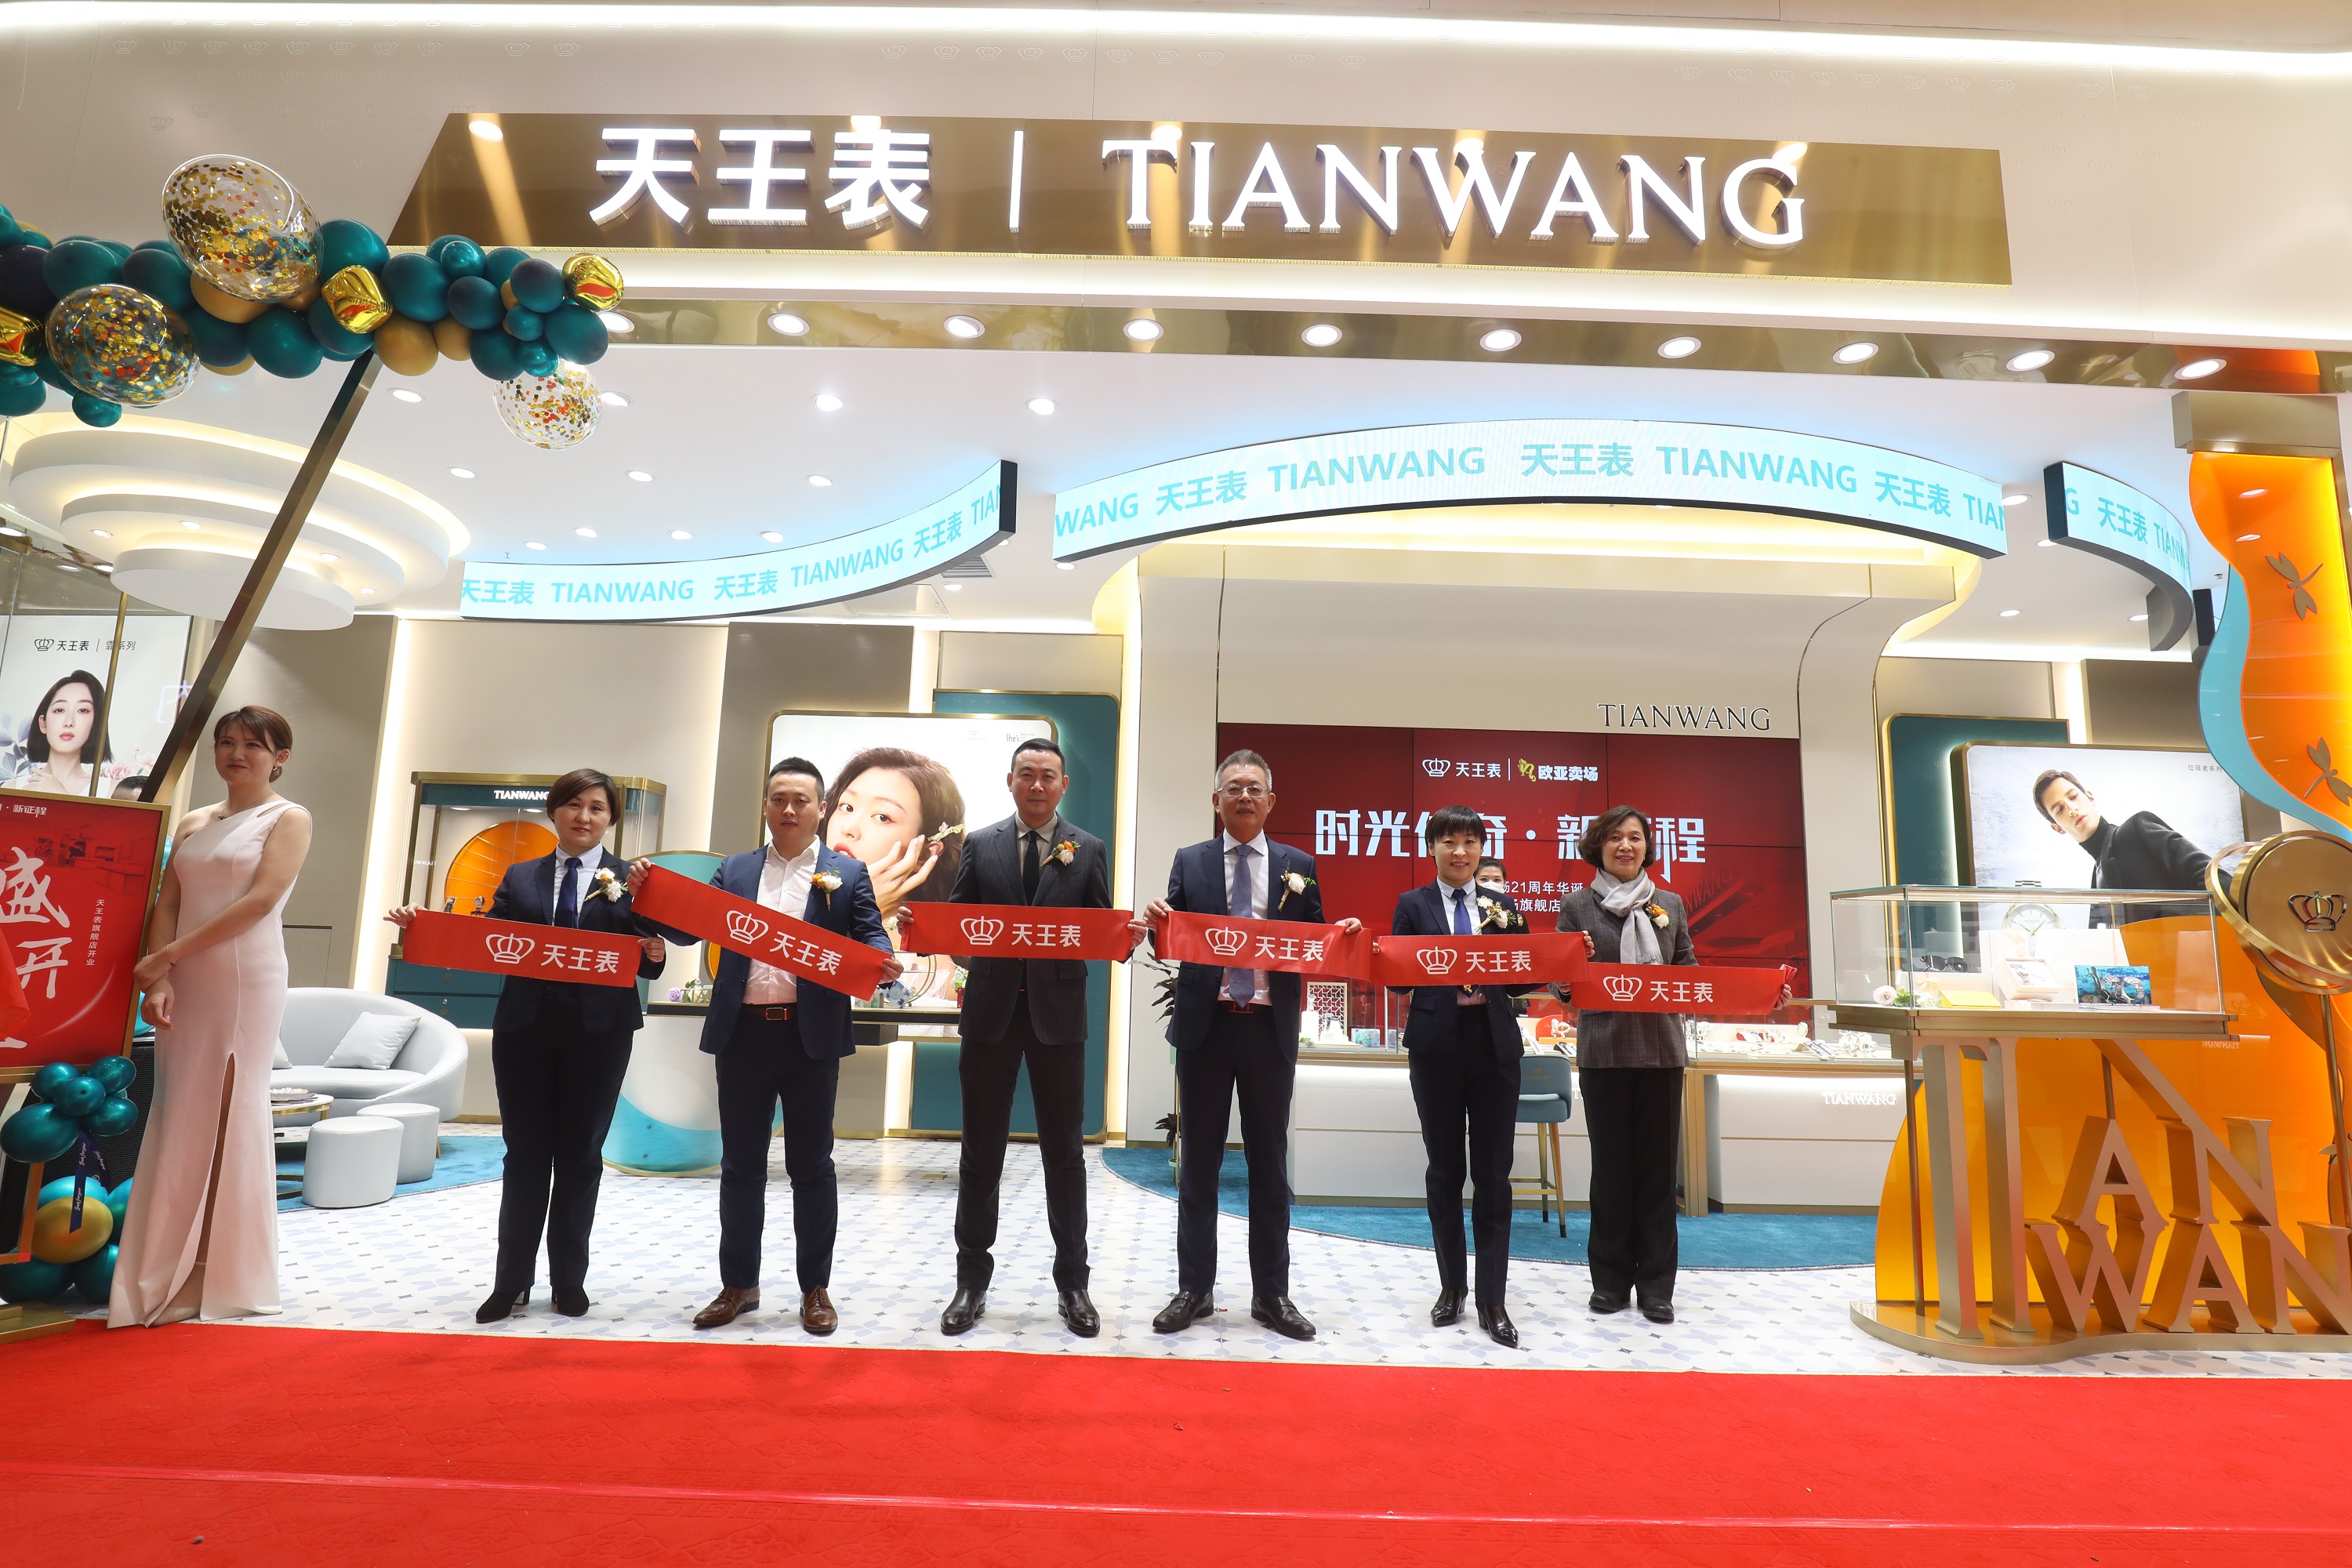 天王表首家全新形象旗舰店，在长春欧亚卖场盛装开业！